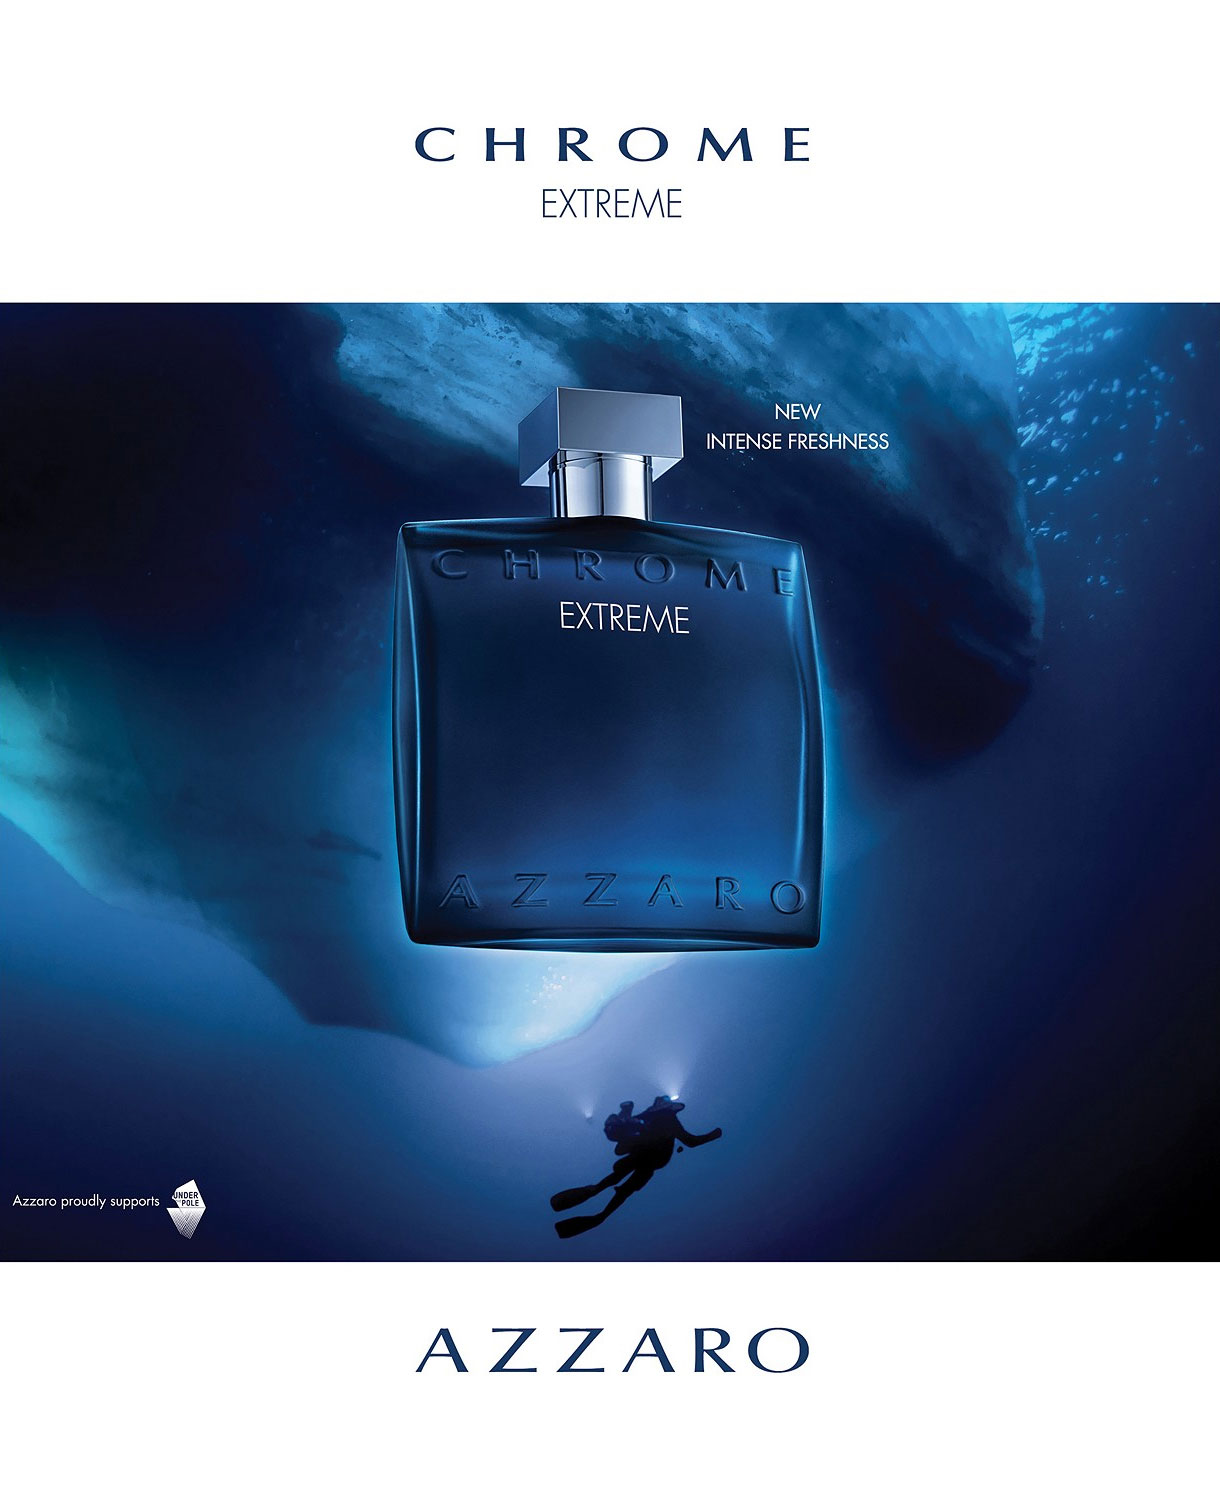 Azzaro Chrome Extreme Fragrance Ad